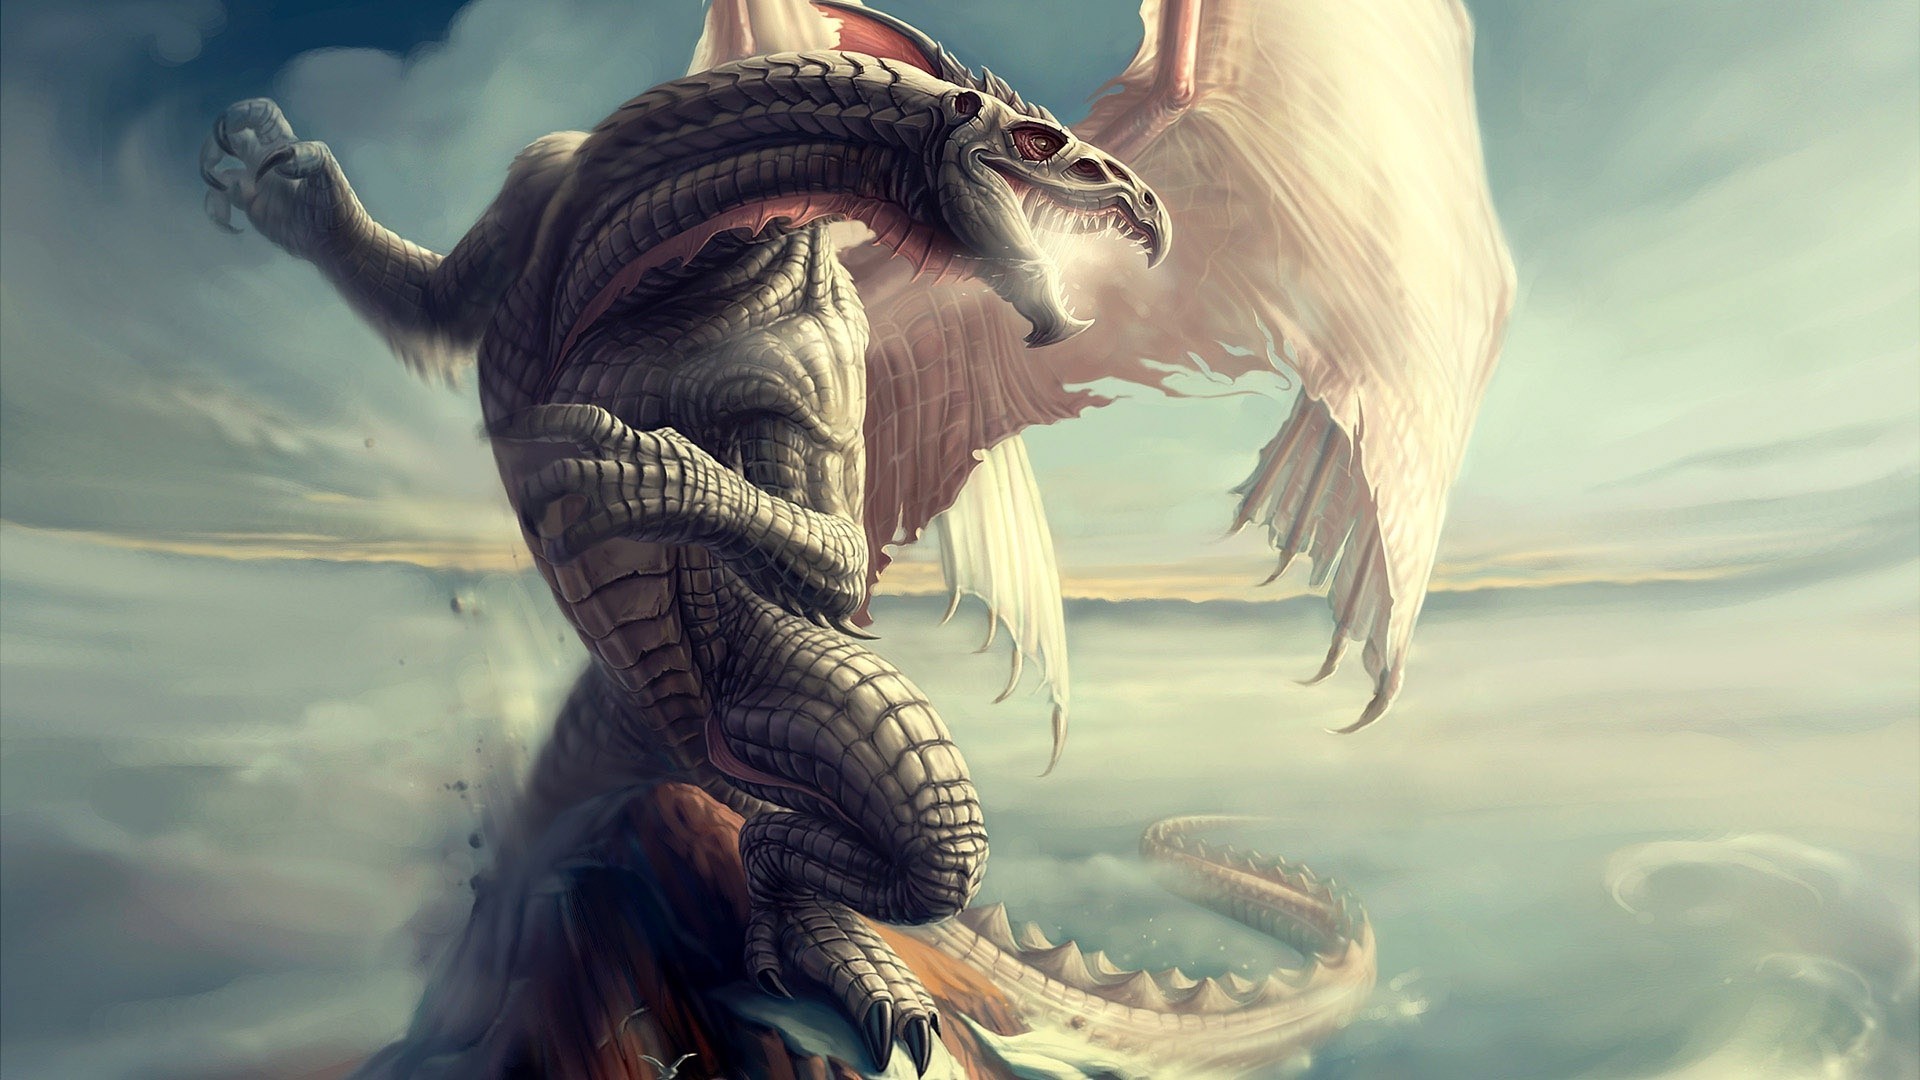 miglior carta da parati drago,drago,cg artwork,mitologia,personaggio fittizio,creatura mitica